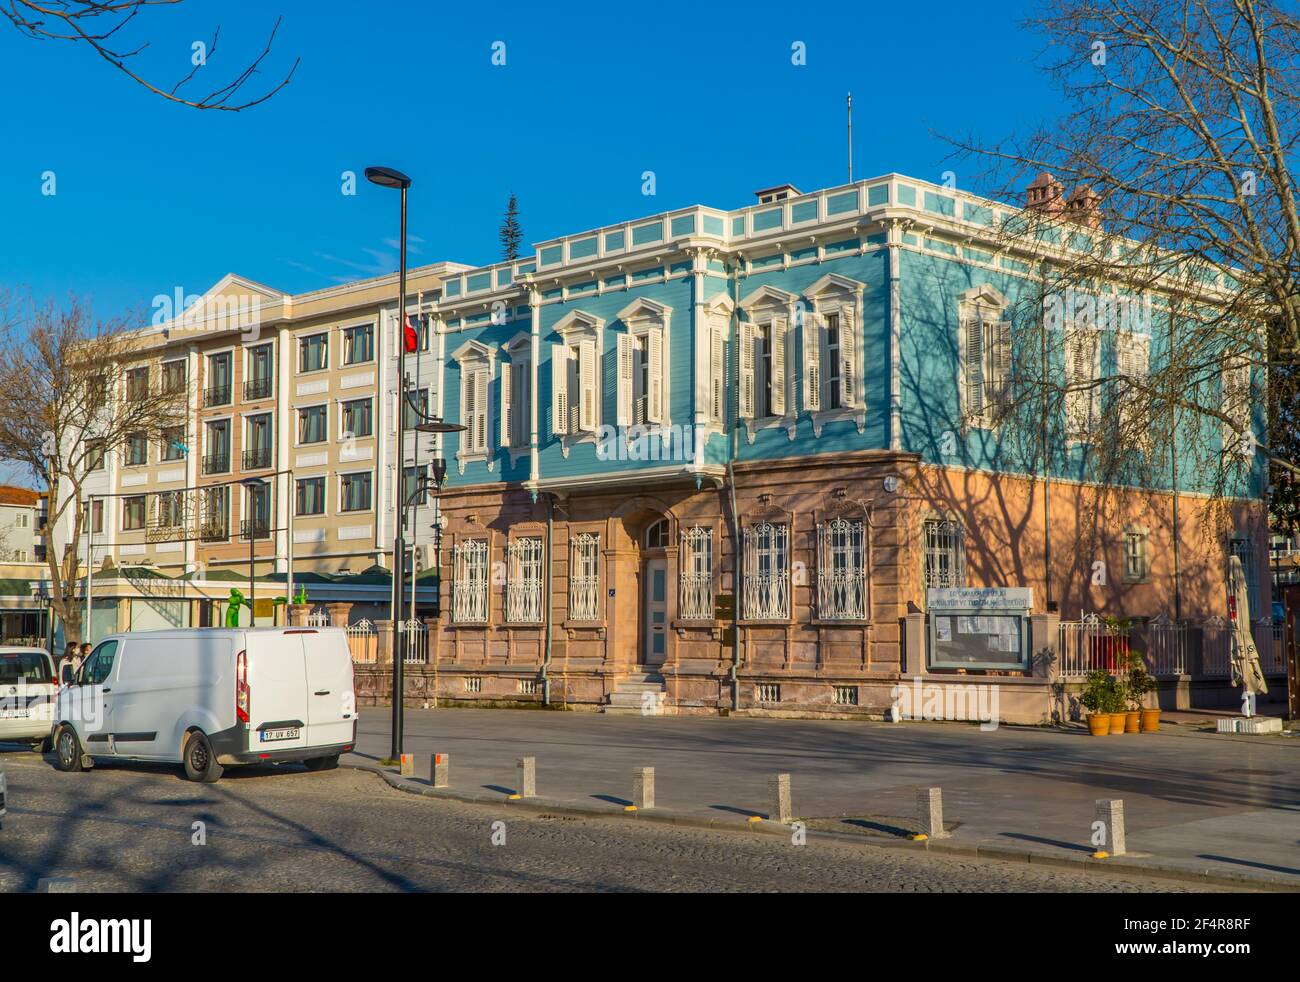 Photographie de rue de bâtiments dans le centre de Canakkale, Turquie Banque D'Images